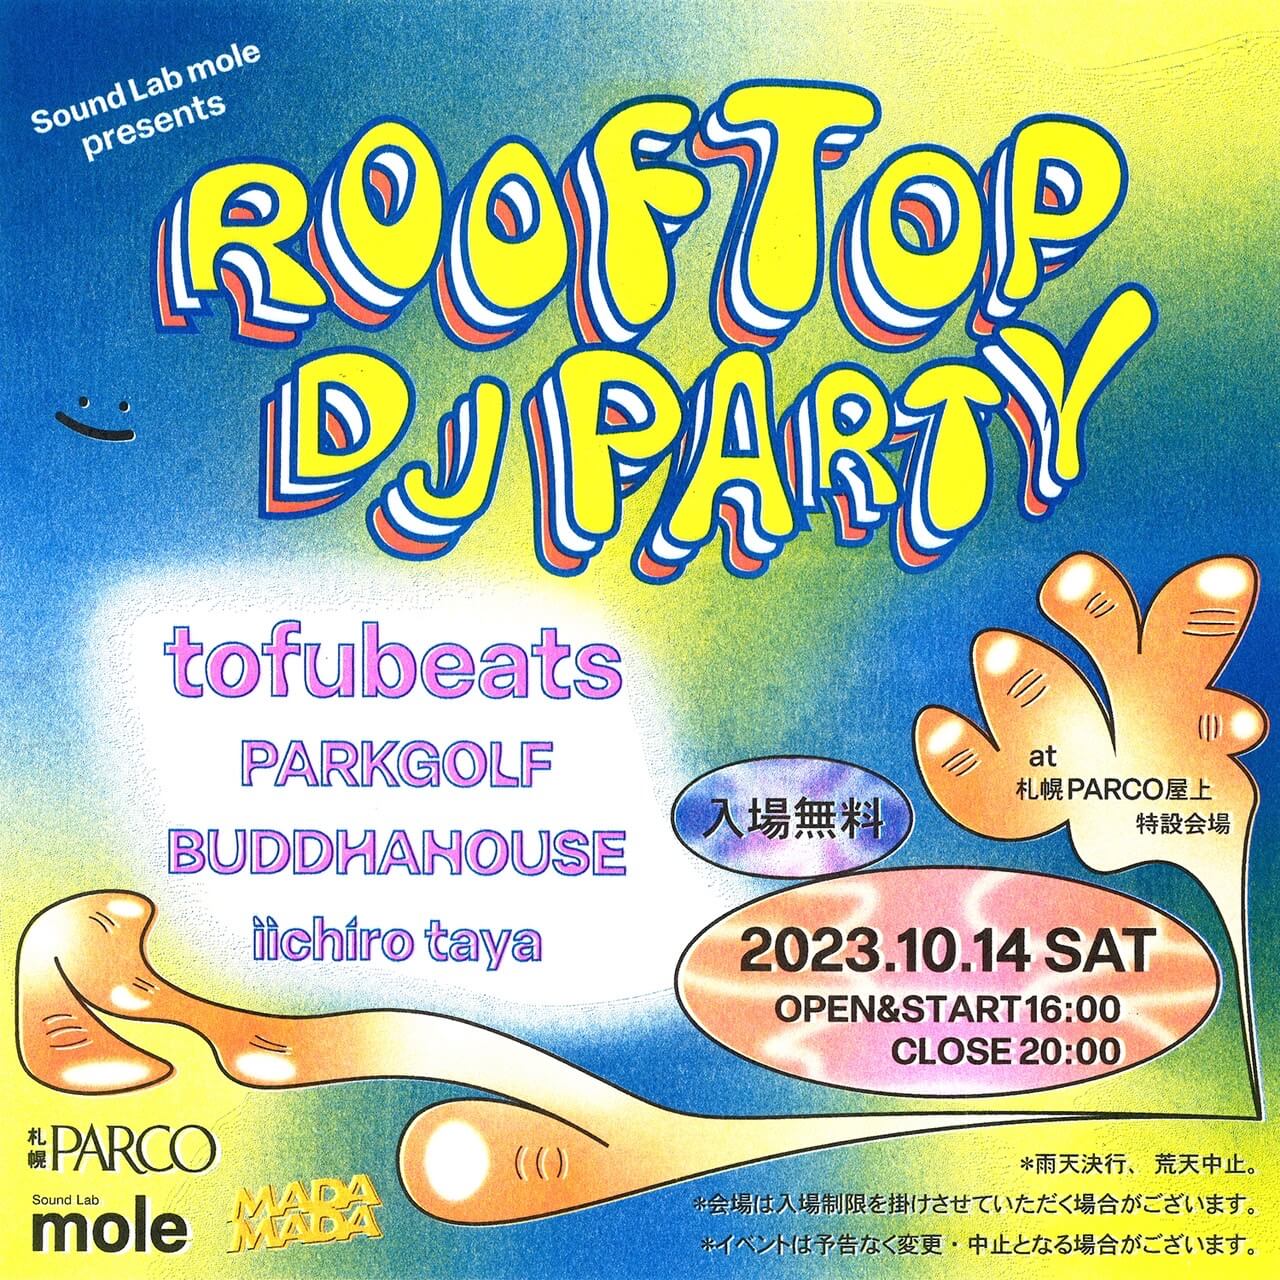 『MADAMADA』-Sound Lab mole presents ROOFTOP DJ PARTY